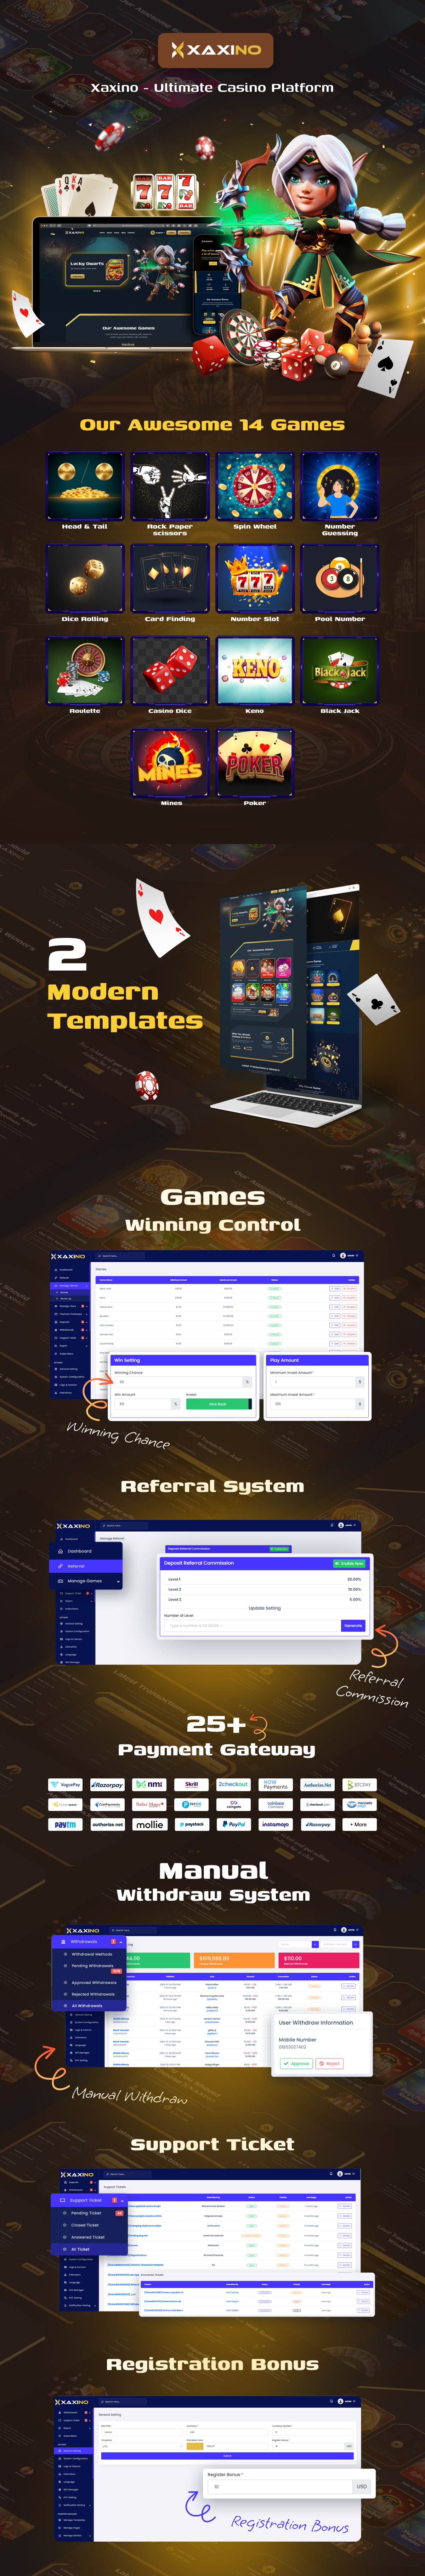 Xaxino - Ultimate Casino Platform - 6